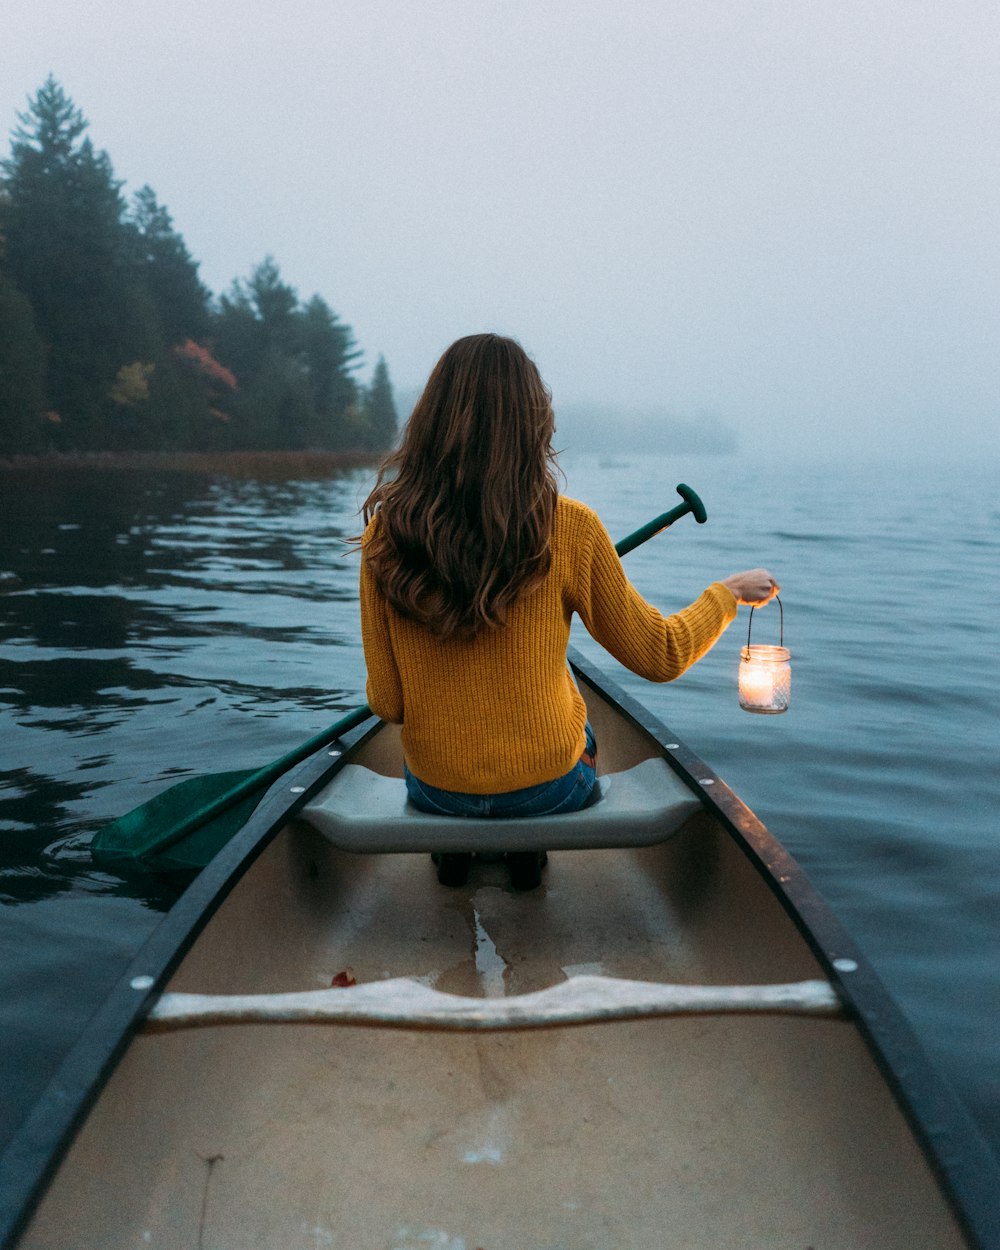 Frau sitzt und hält Lampe auf Holzkanu und betrachtet ruhiges Gewässer